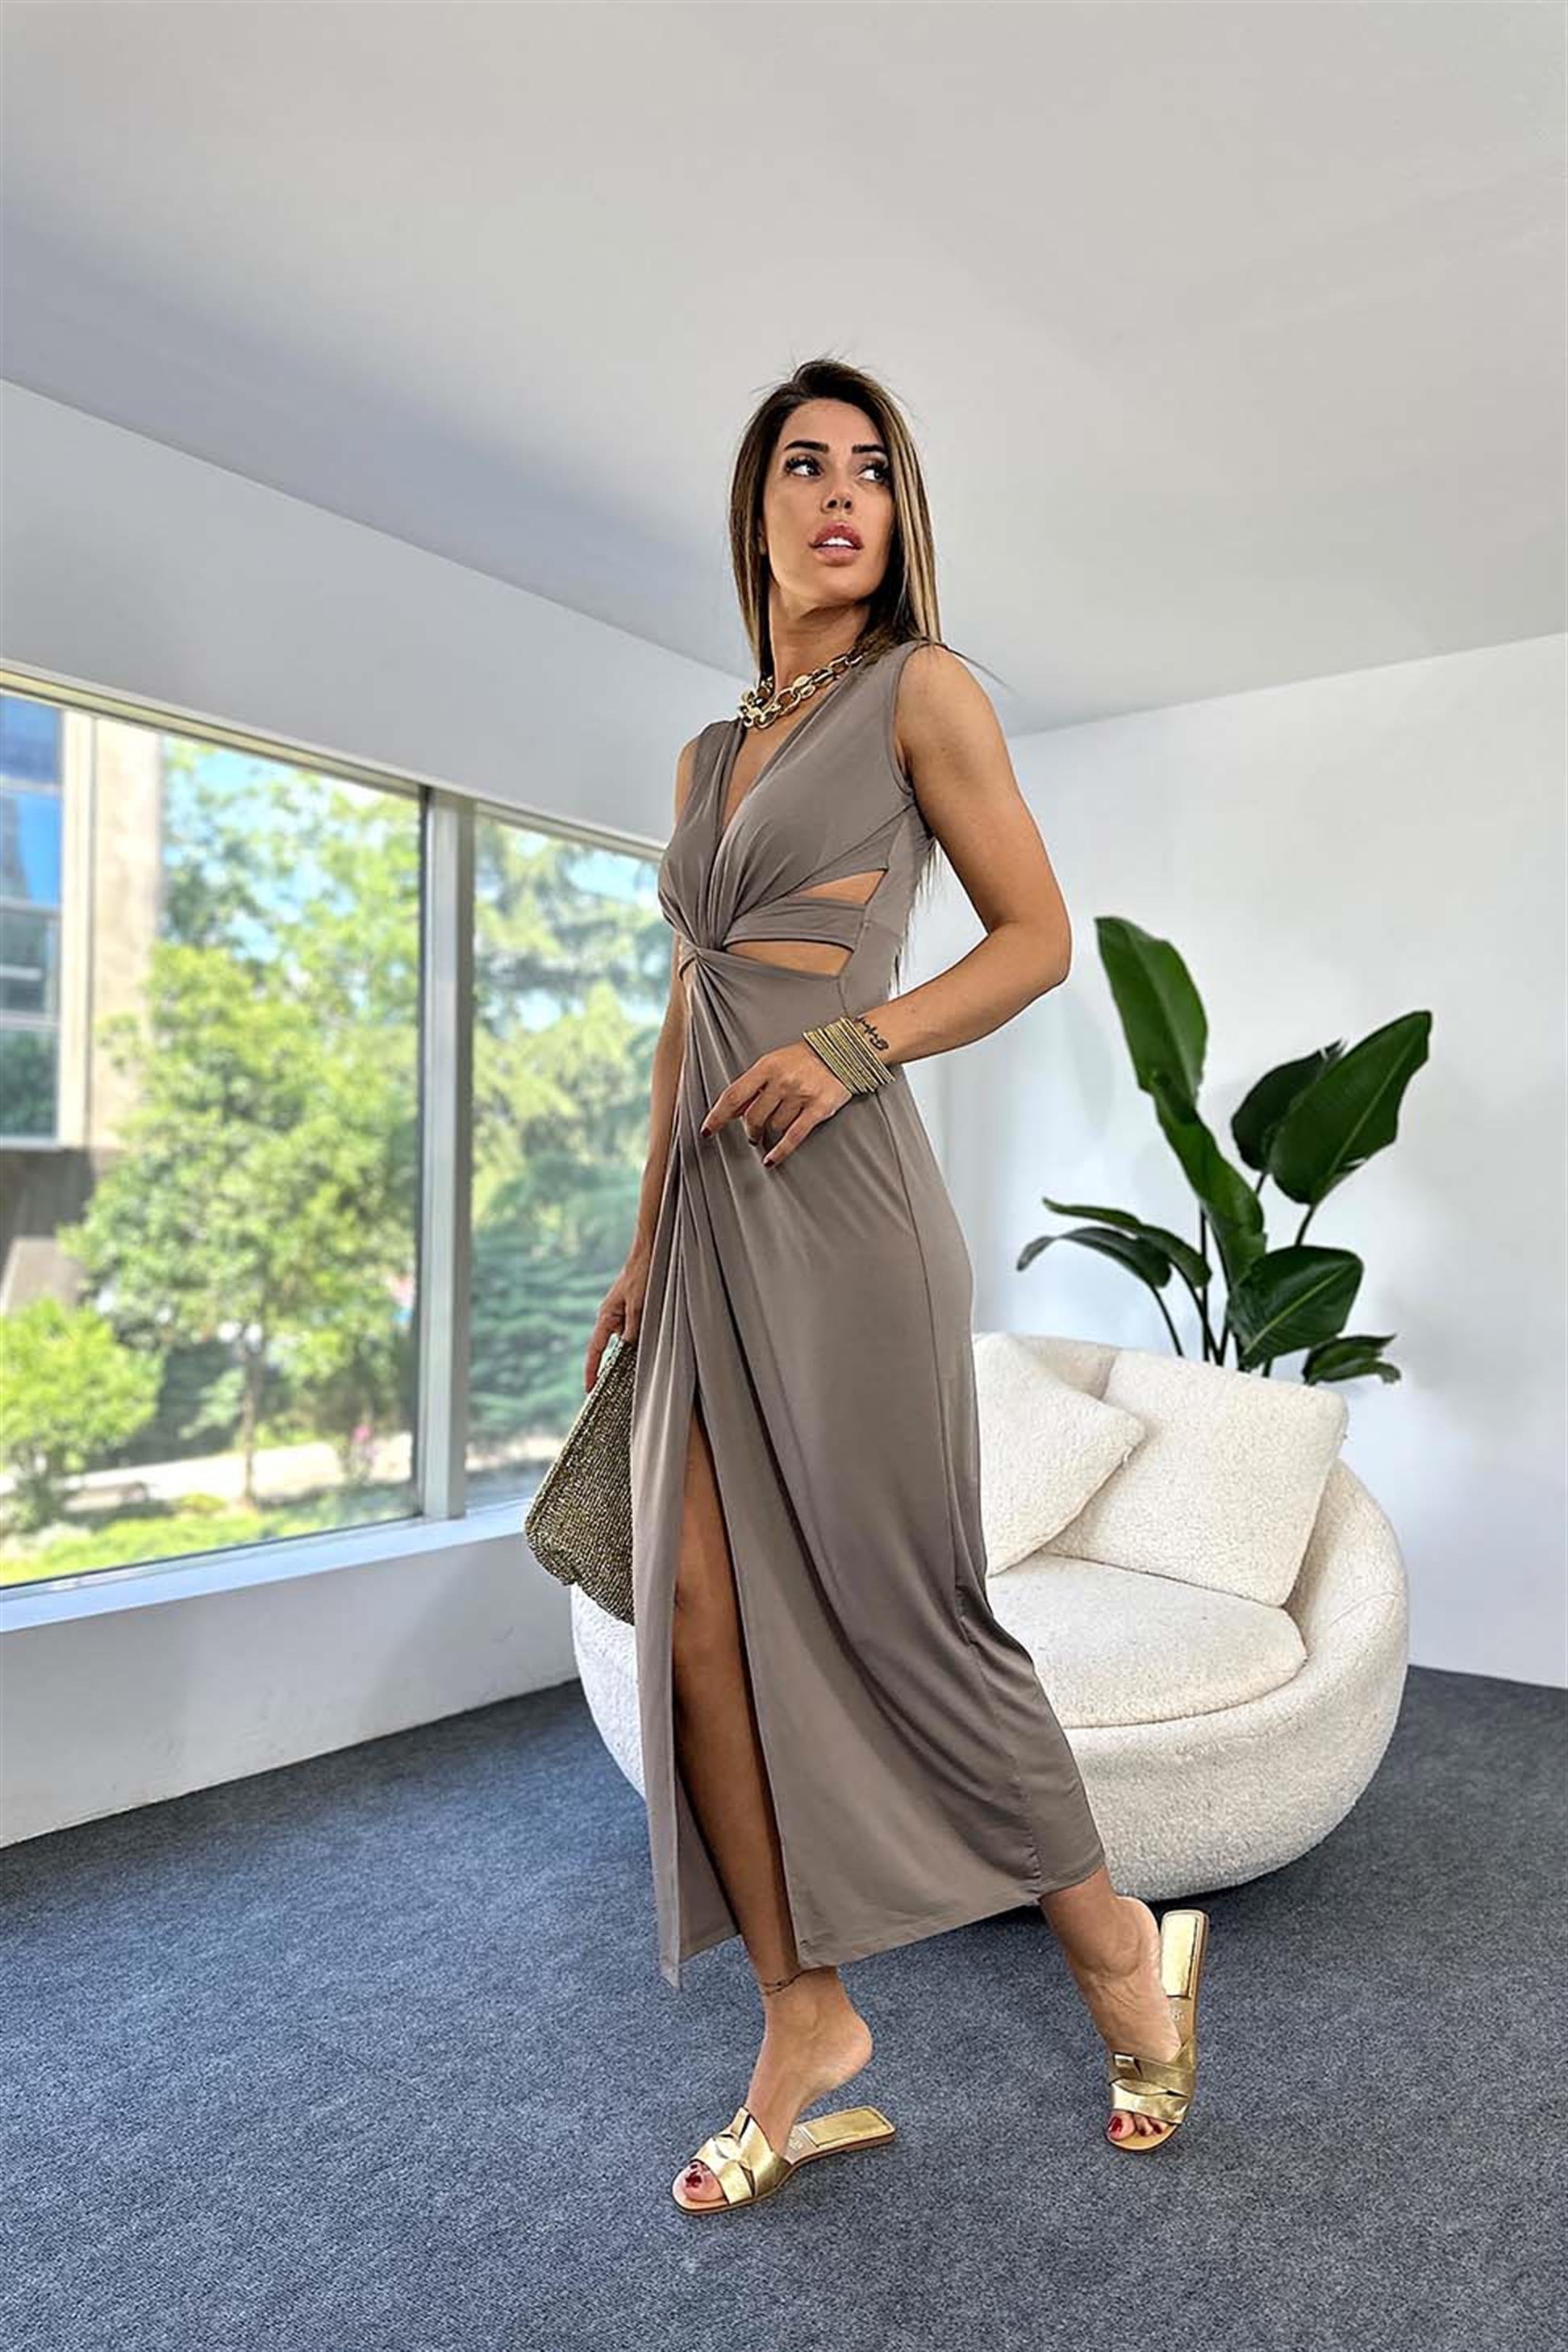 Premium Kalite Pamuklu ve Likralı Kumaş Tasarım Abiye Elbise Vizon - Butik  Gardrop